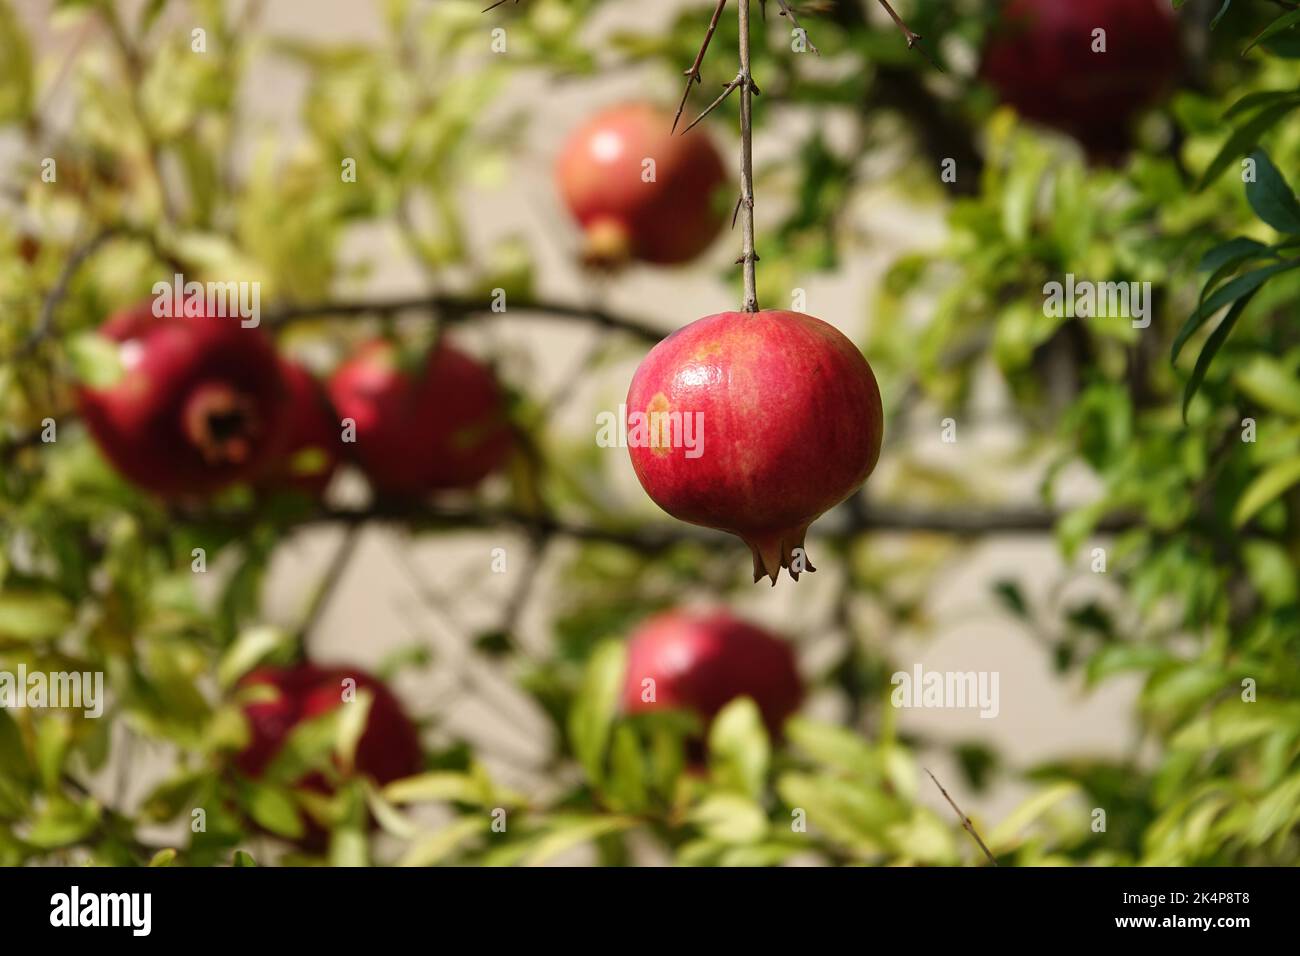 Fruit de grenade mûr rouge sur branche d'arbre dans le jardin. Image colorée avec emplacement pour le texte, gros plan. Rosh-haShana - symbole du nouvel an israélien Banque D'Images